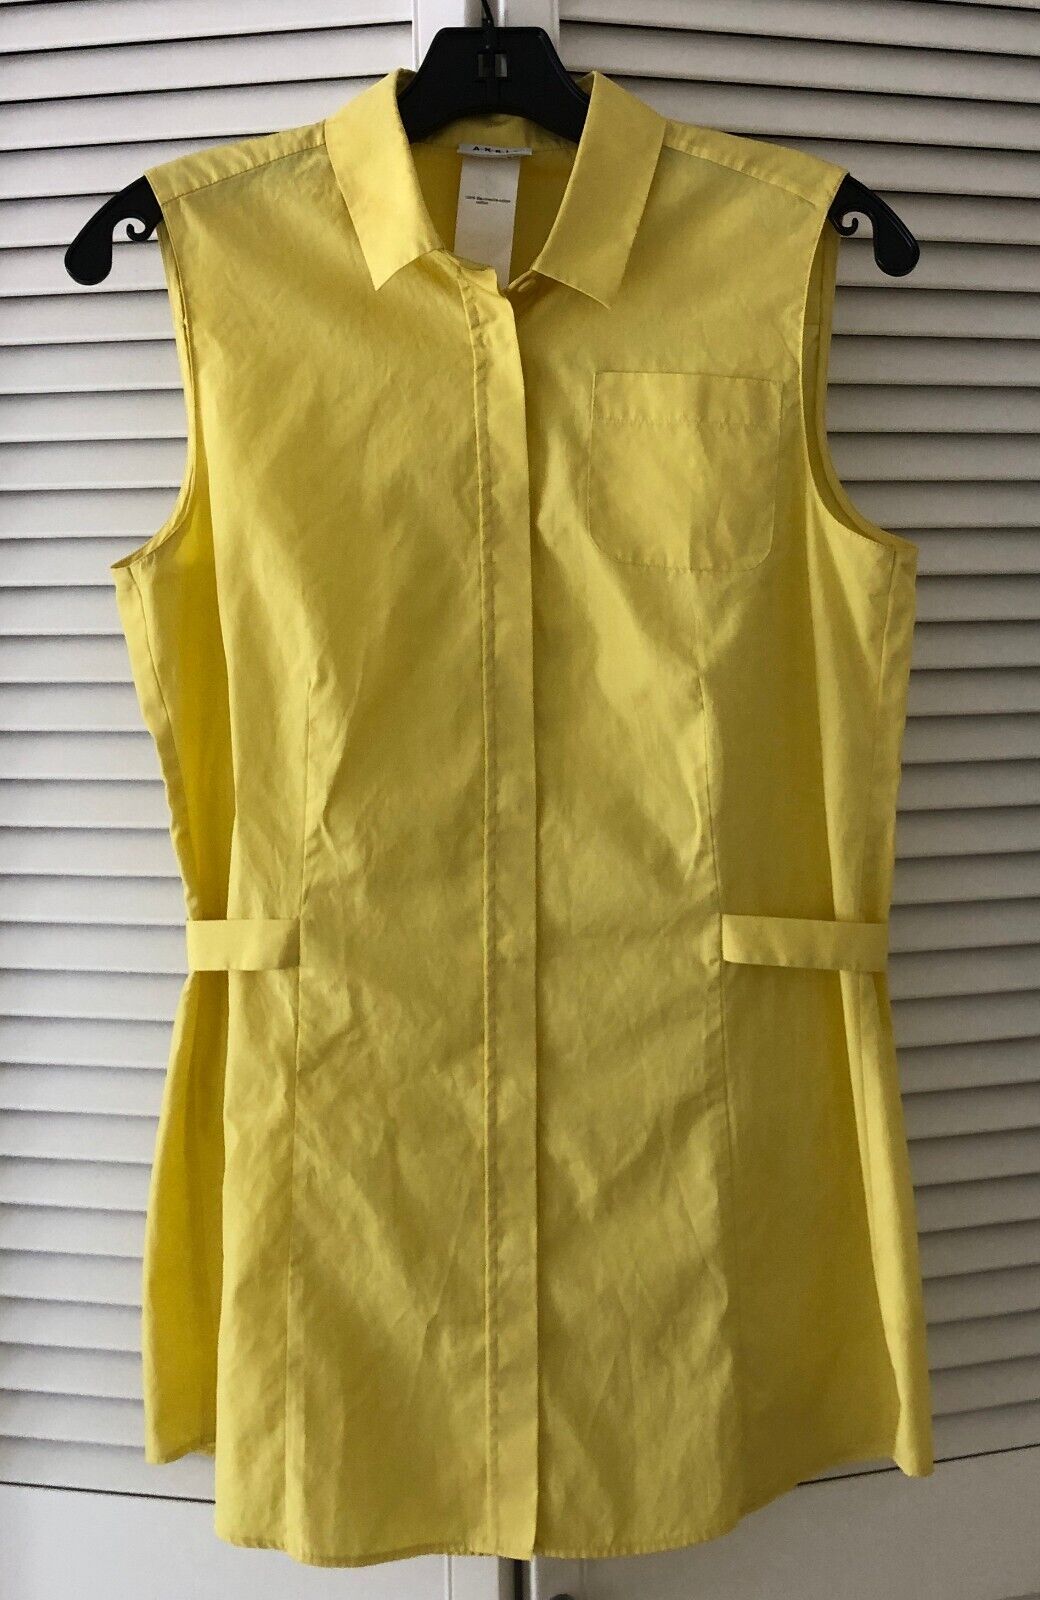 A-K-R-I-S  .punto AKRIS Yellow Sleeveless Cotton  Blouse Top Button Up , US 8